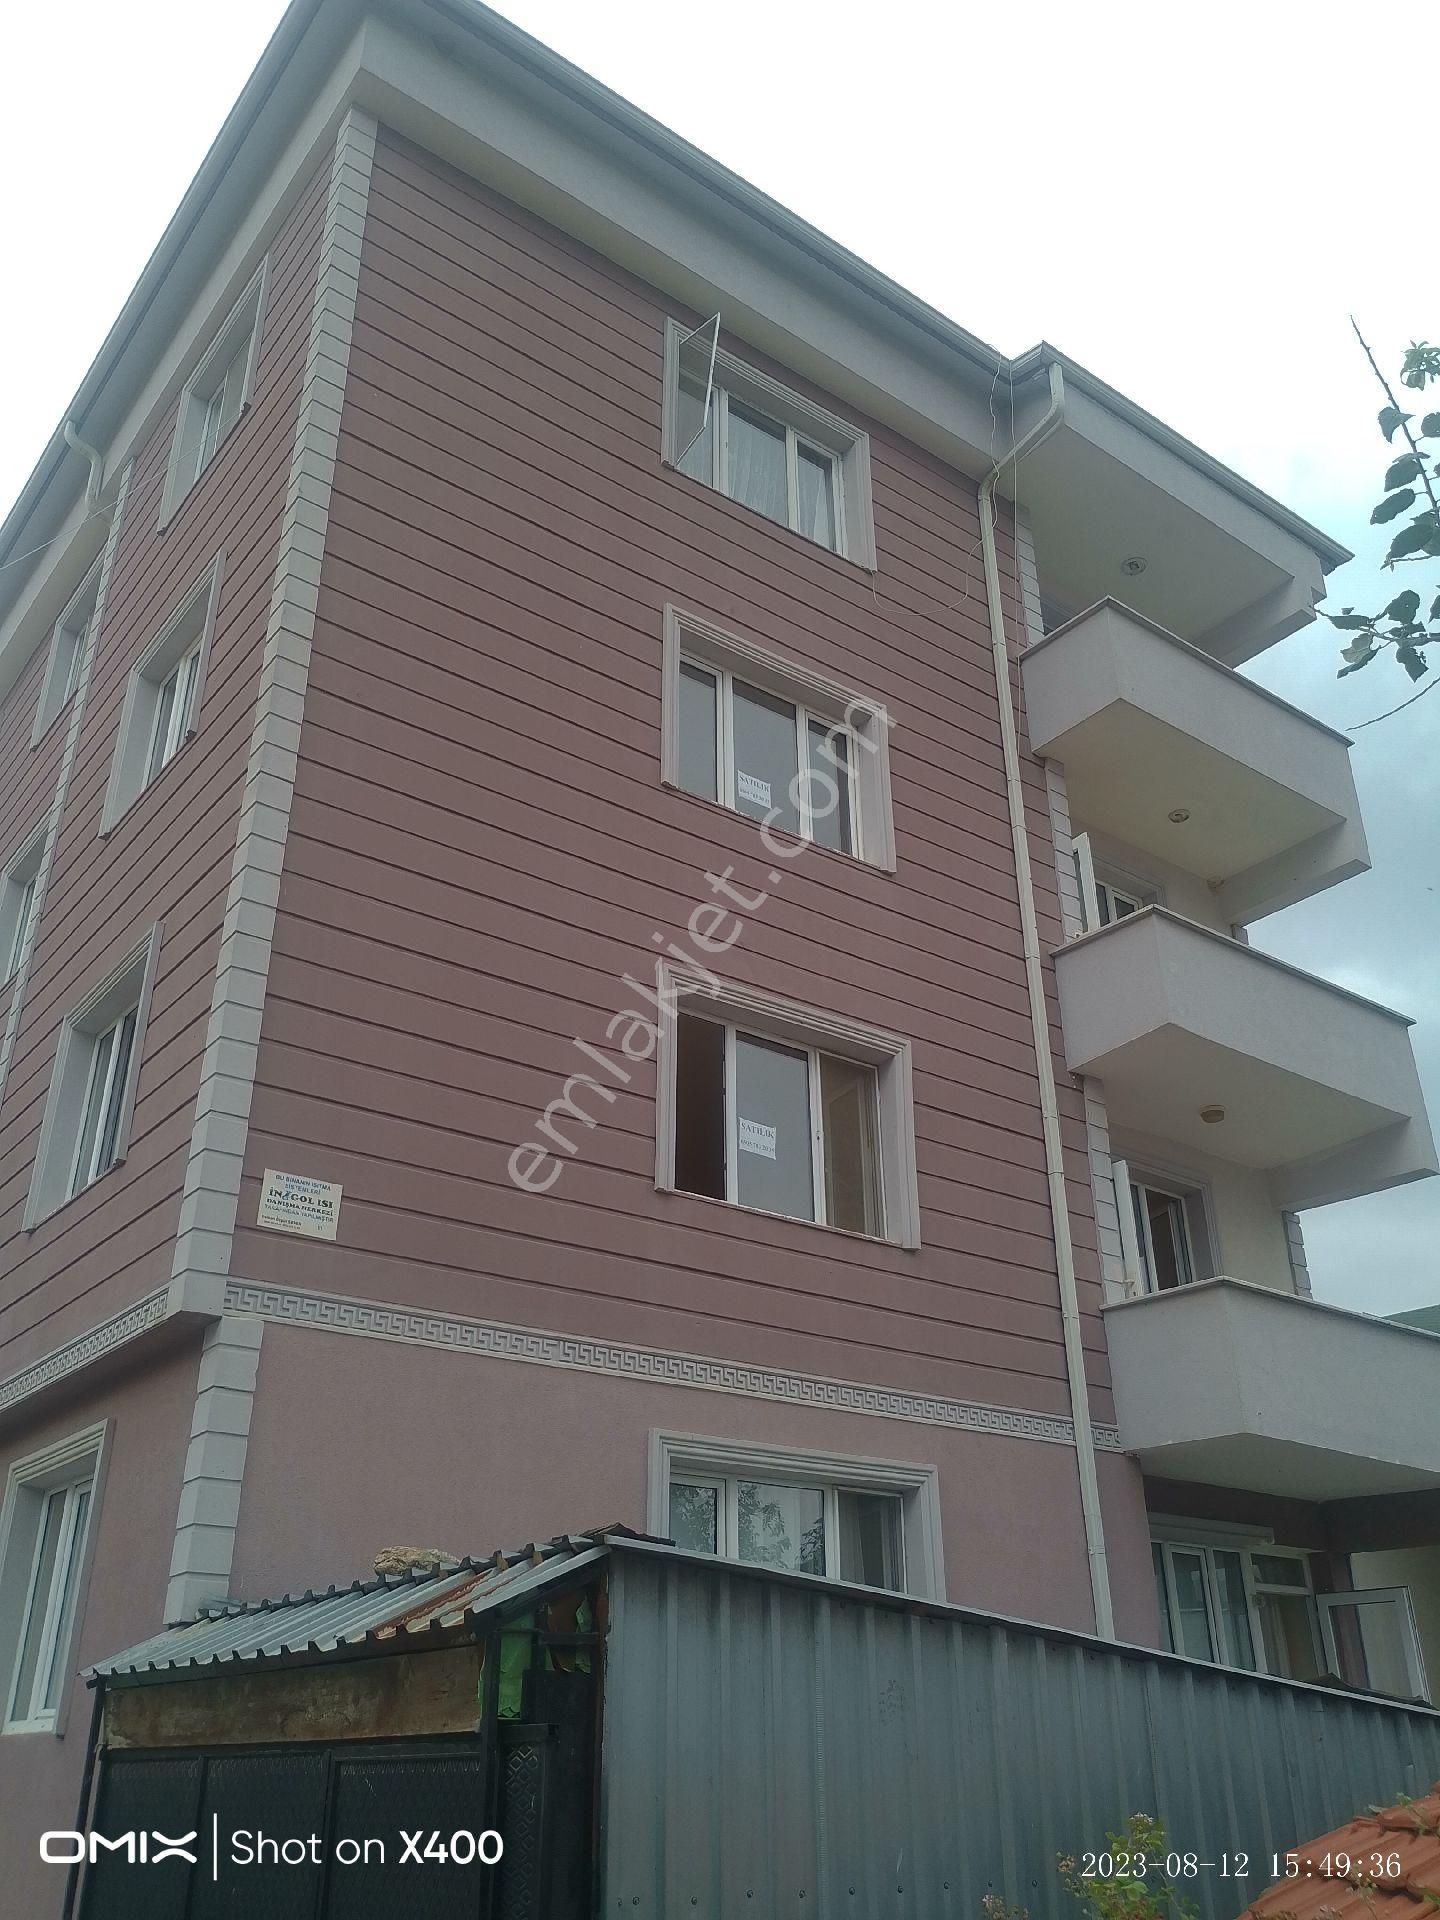 İnegöl Yeniceköy Satılık Daire Yeniceköy Okullar Caddesinde 3+1 Aile Apartmanında Satılık Ara Kat Daire